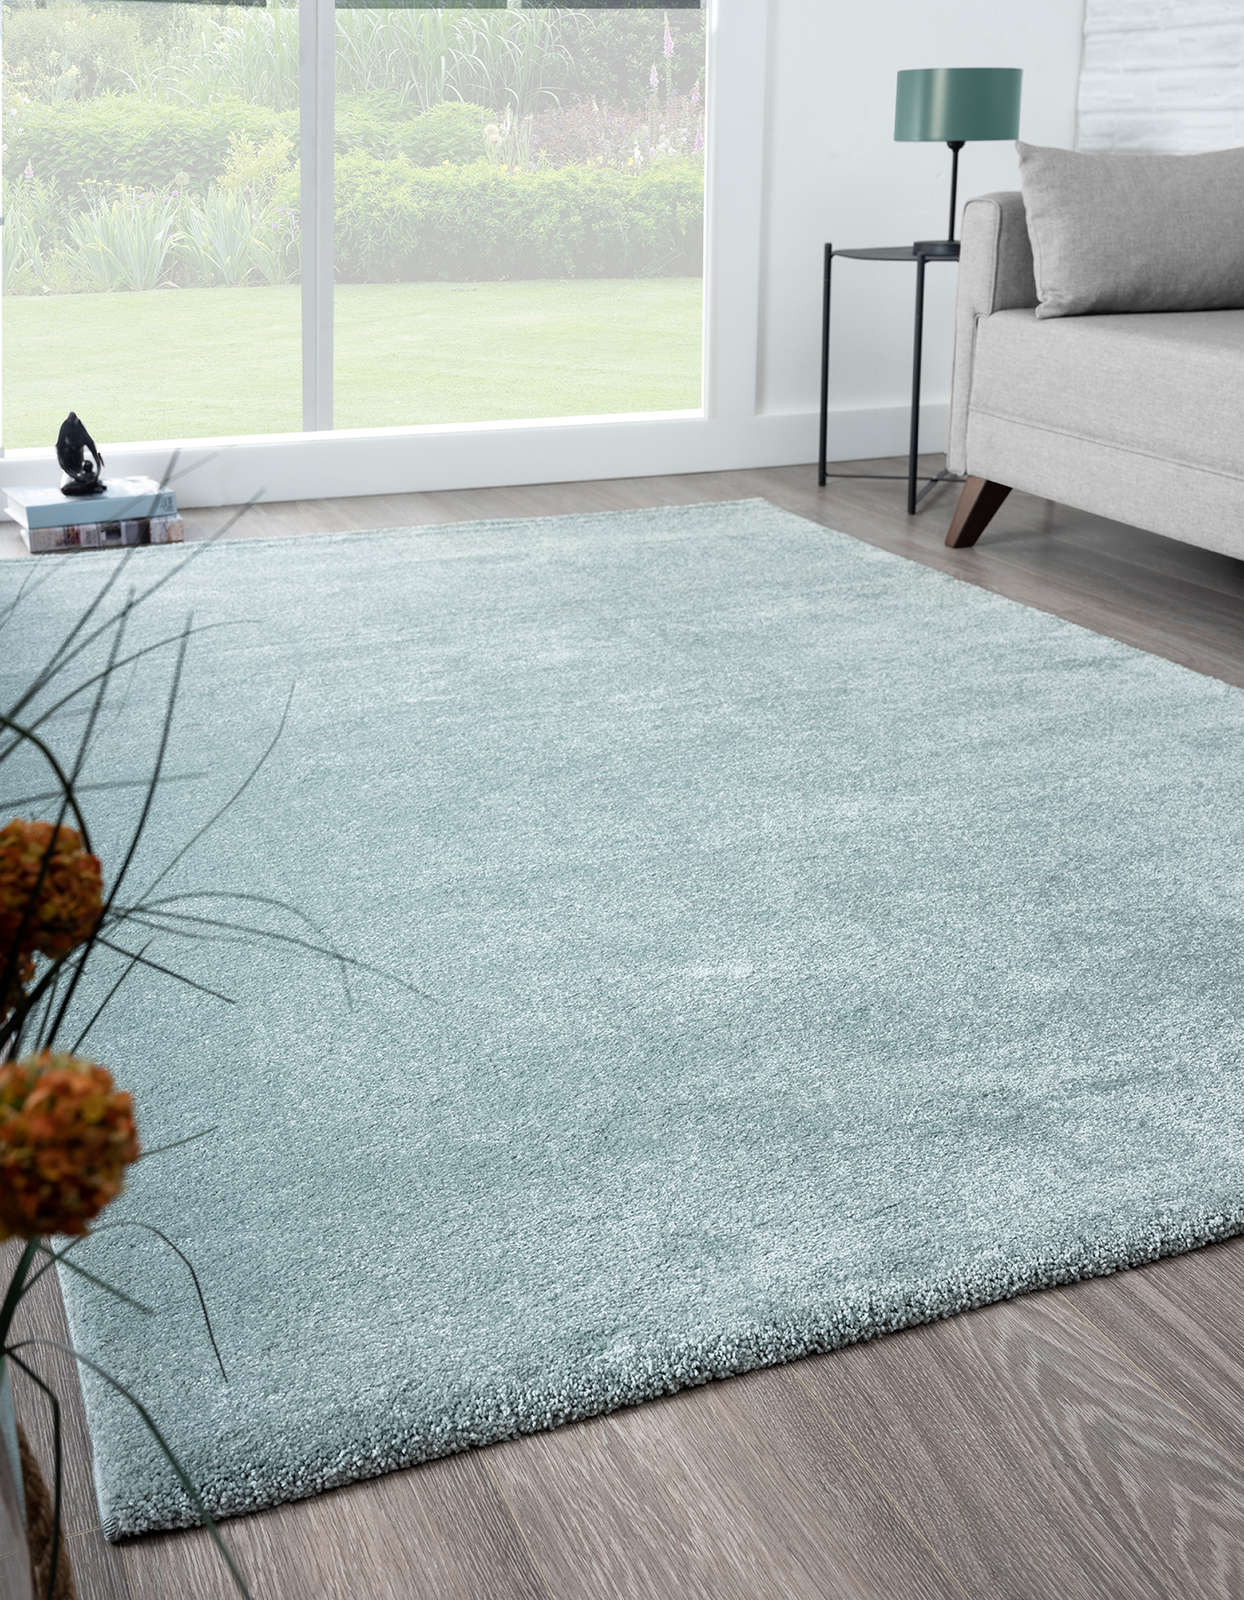             Eenvoudig kortpolig tapijt in blauw - 230 x 160 cm
        